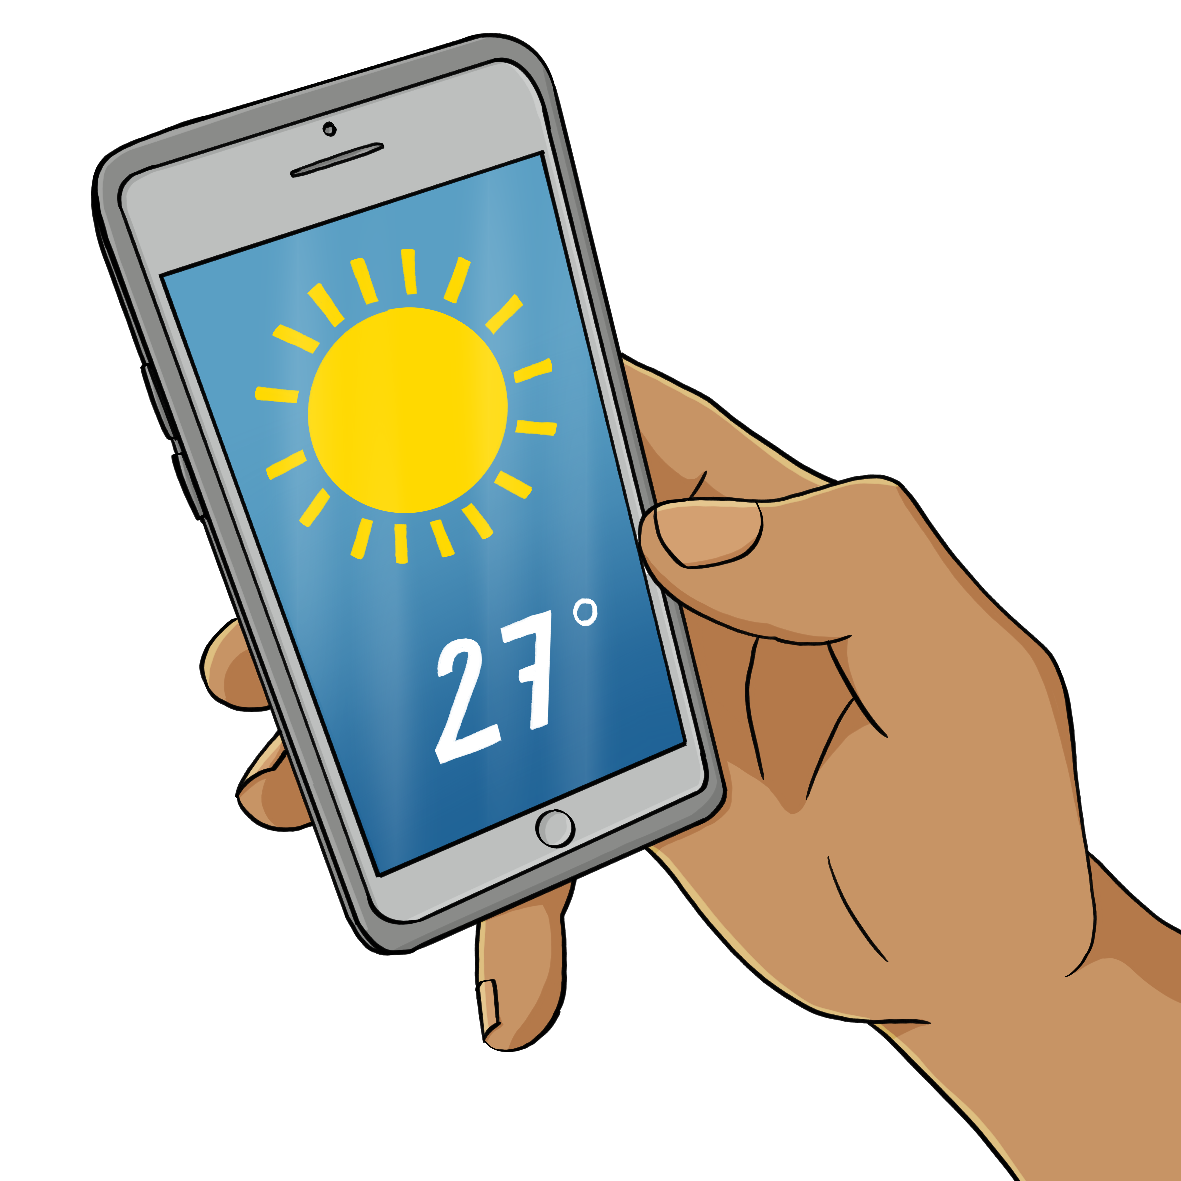 Eine Hand hält ein Handy. Auf dem Display ist eine Sonne und die Aufschrift: 27°.